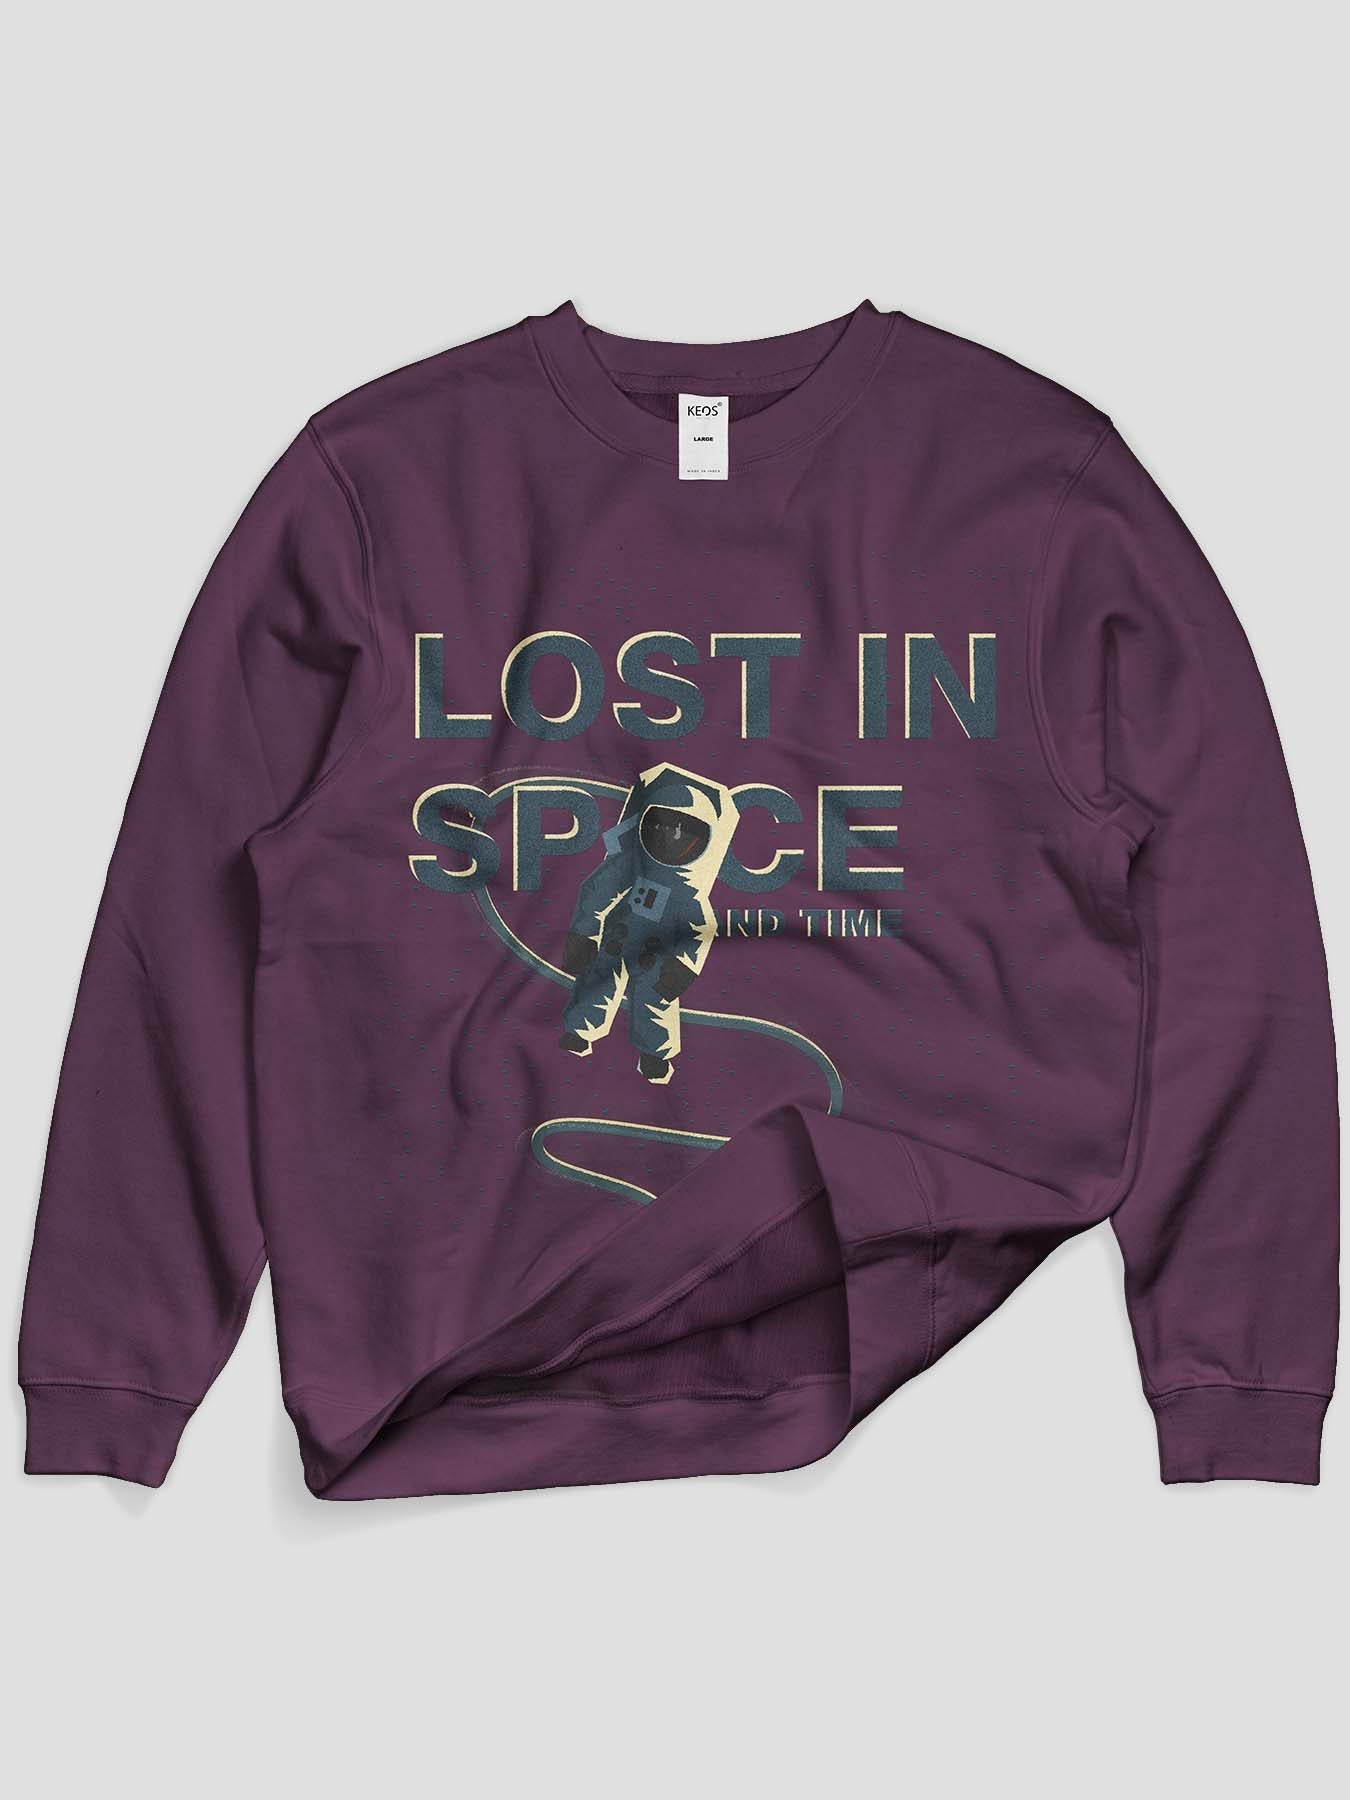 Lost in Space Printed Sweatshirt - keos.life